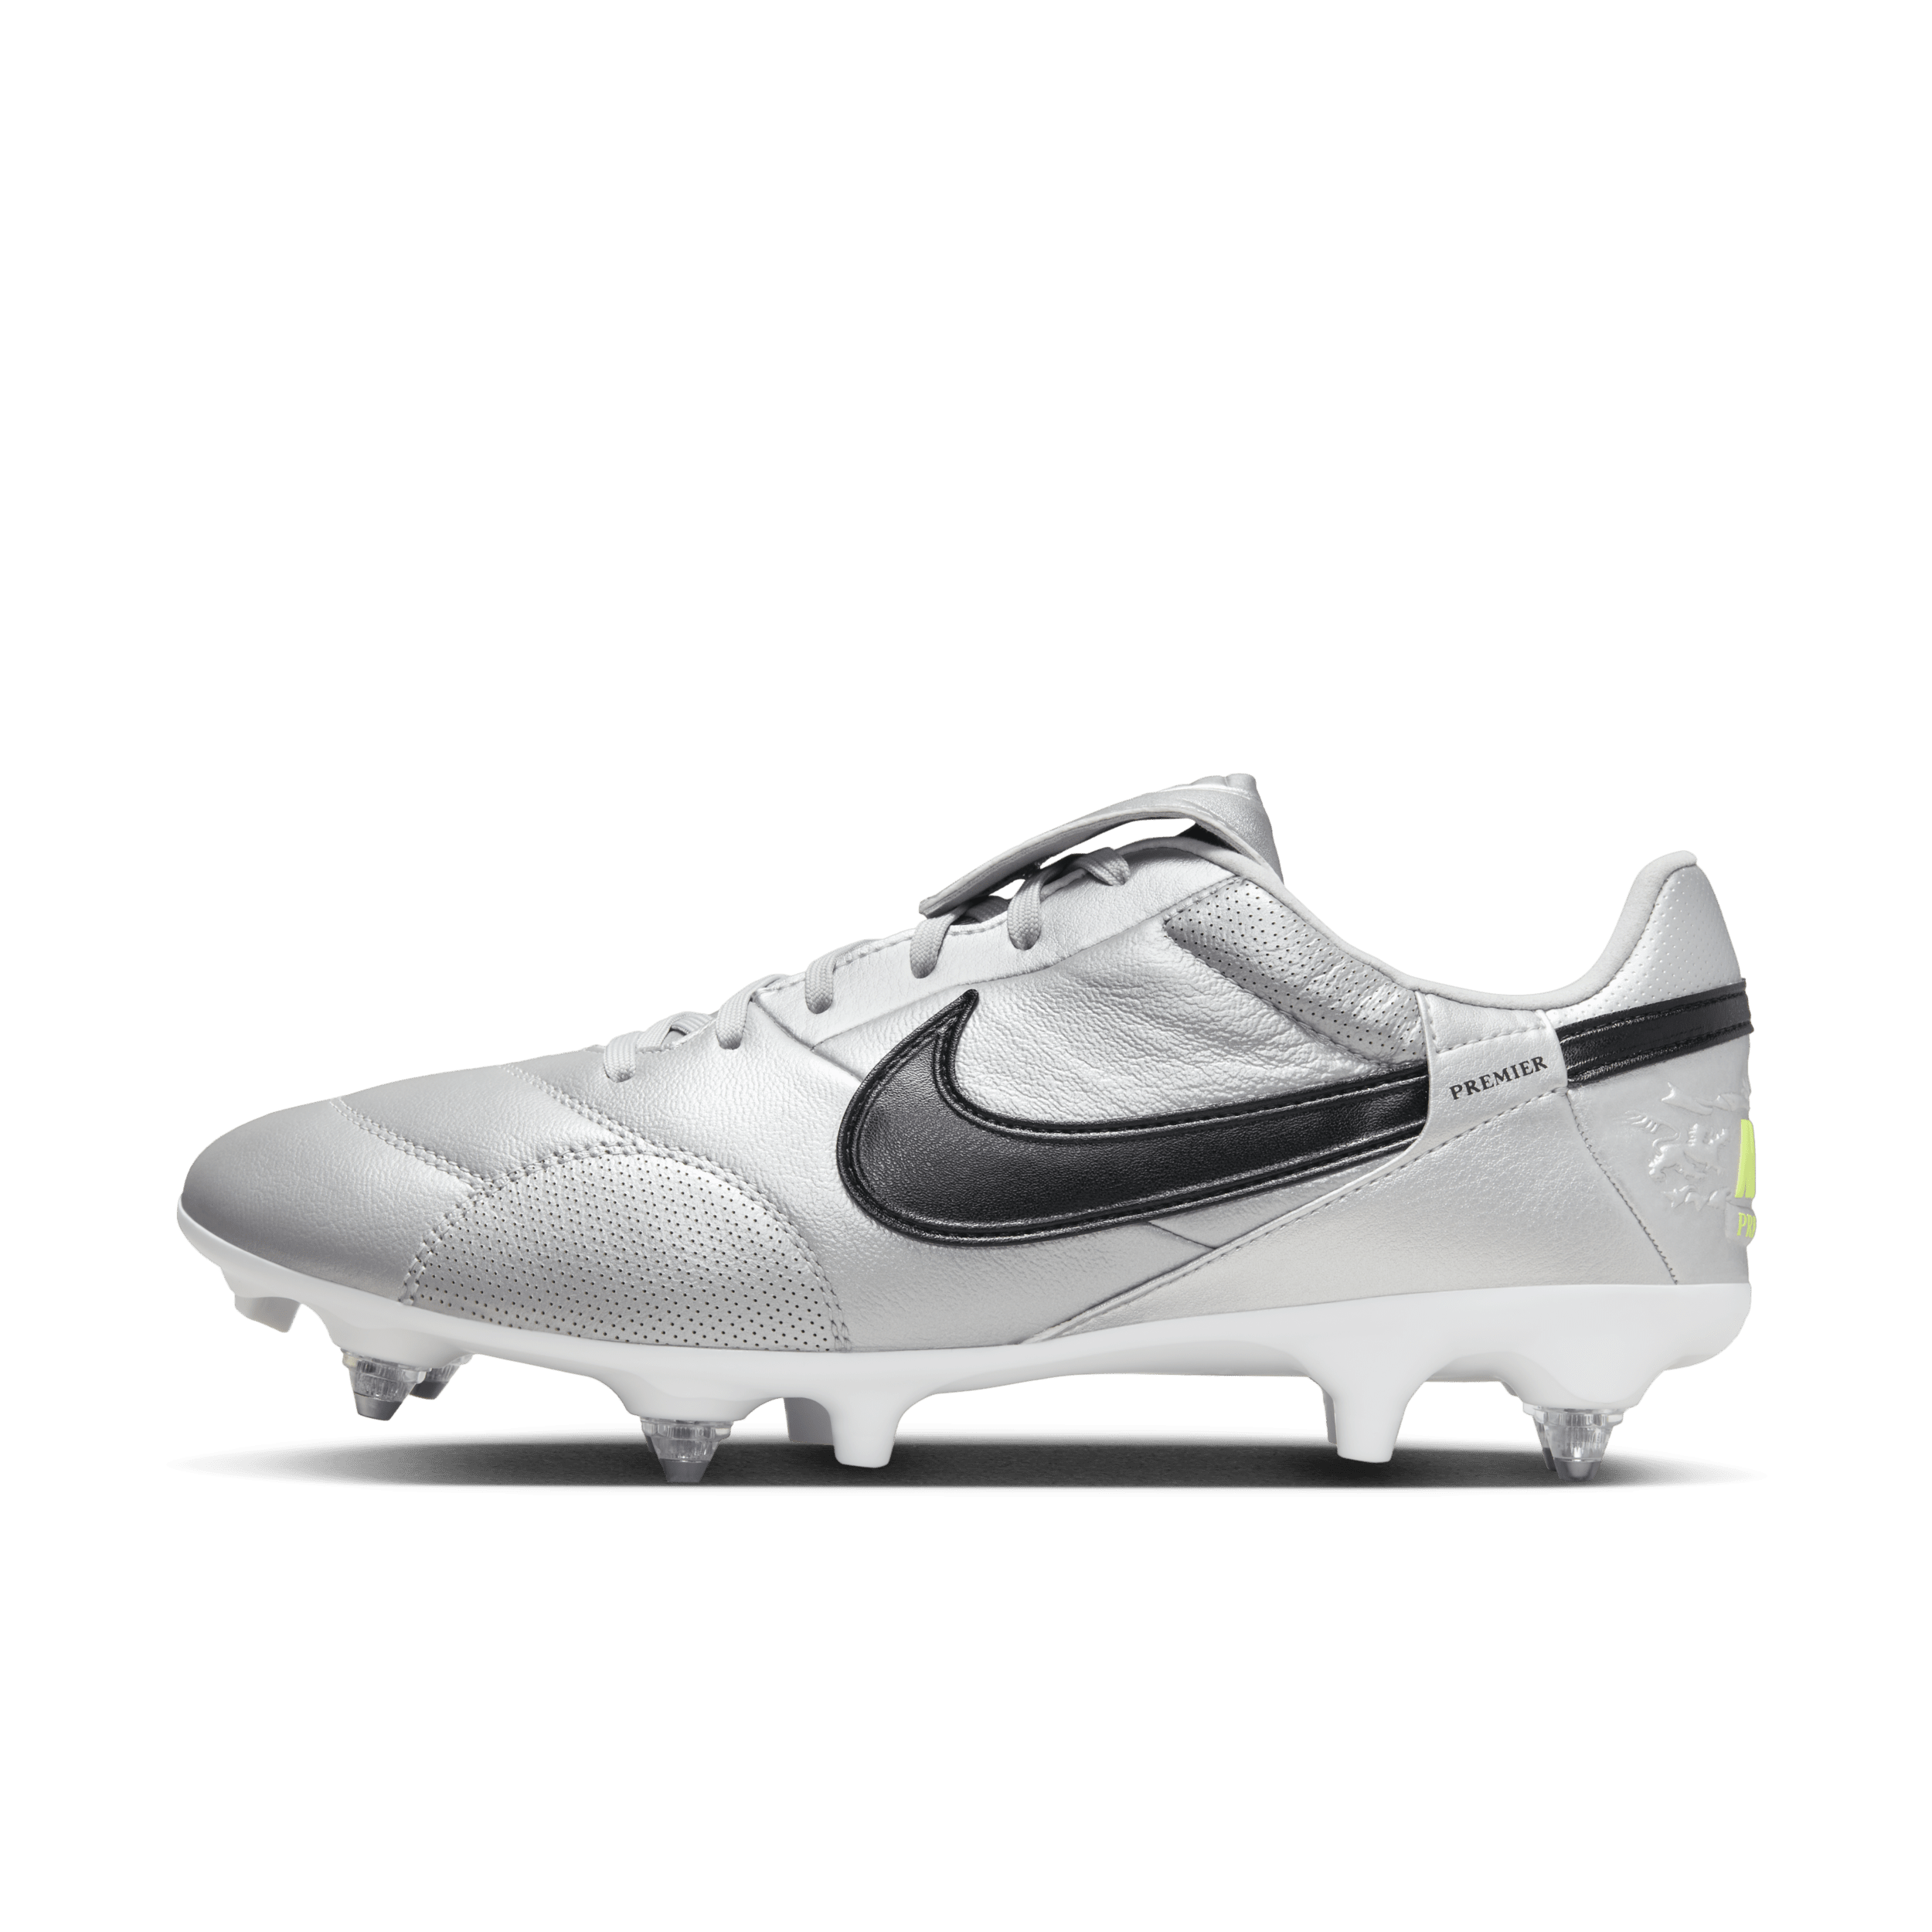 NikePremier 3-fodboldstøvler (low-top) til blødt underlag - grå